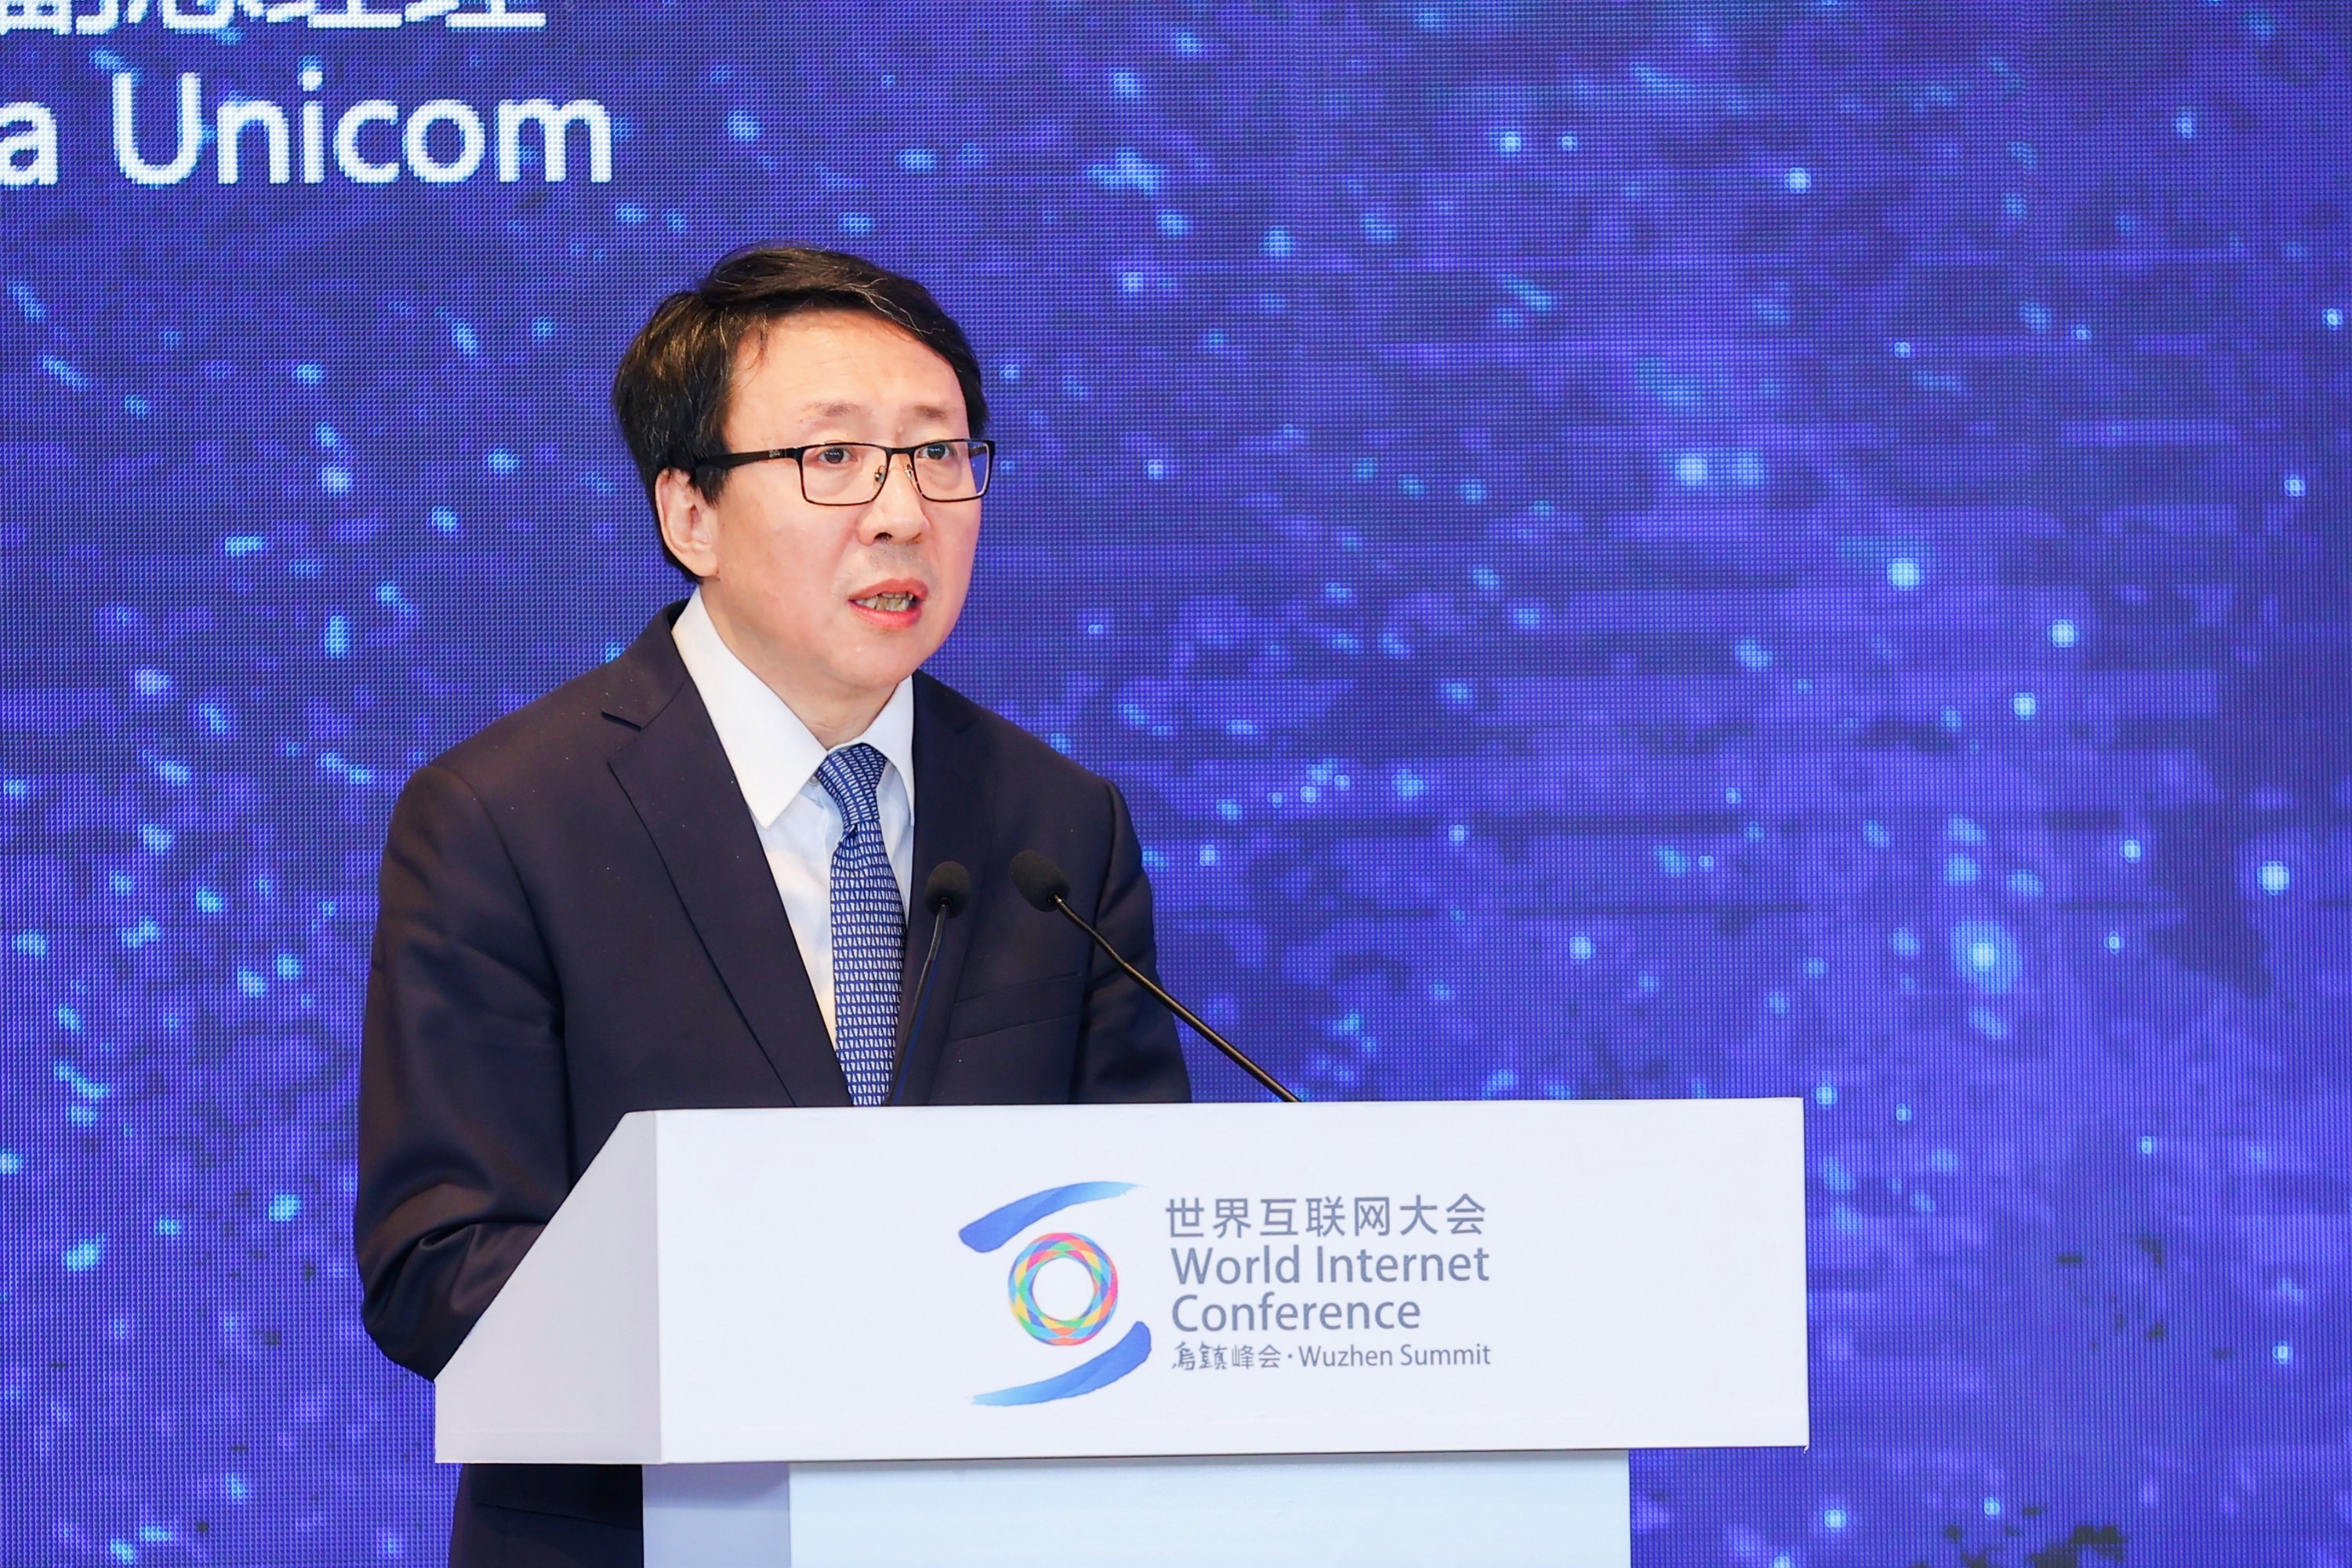 中国联通副总经理梁宝俊作主题演讲。